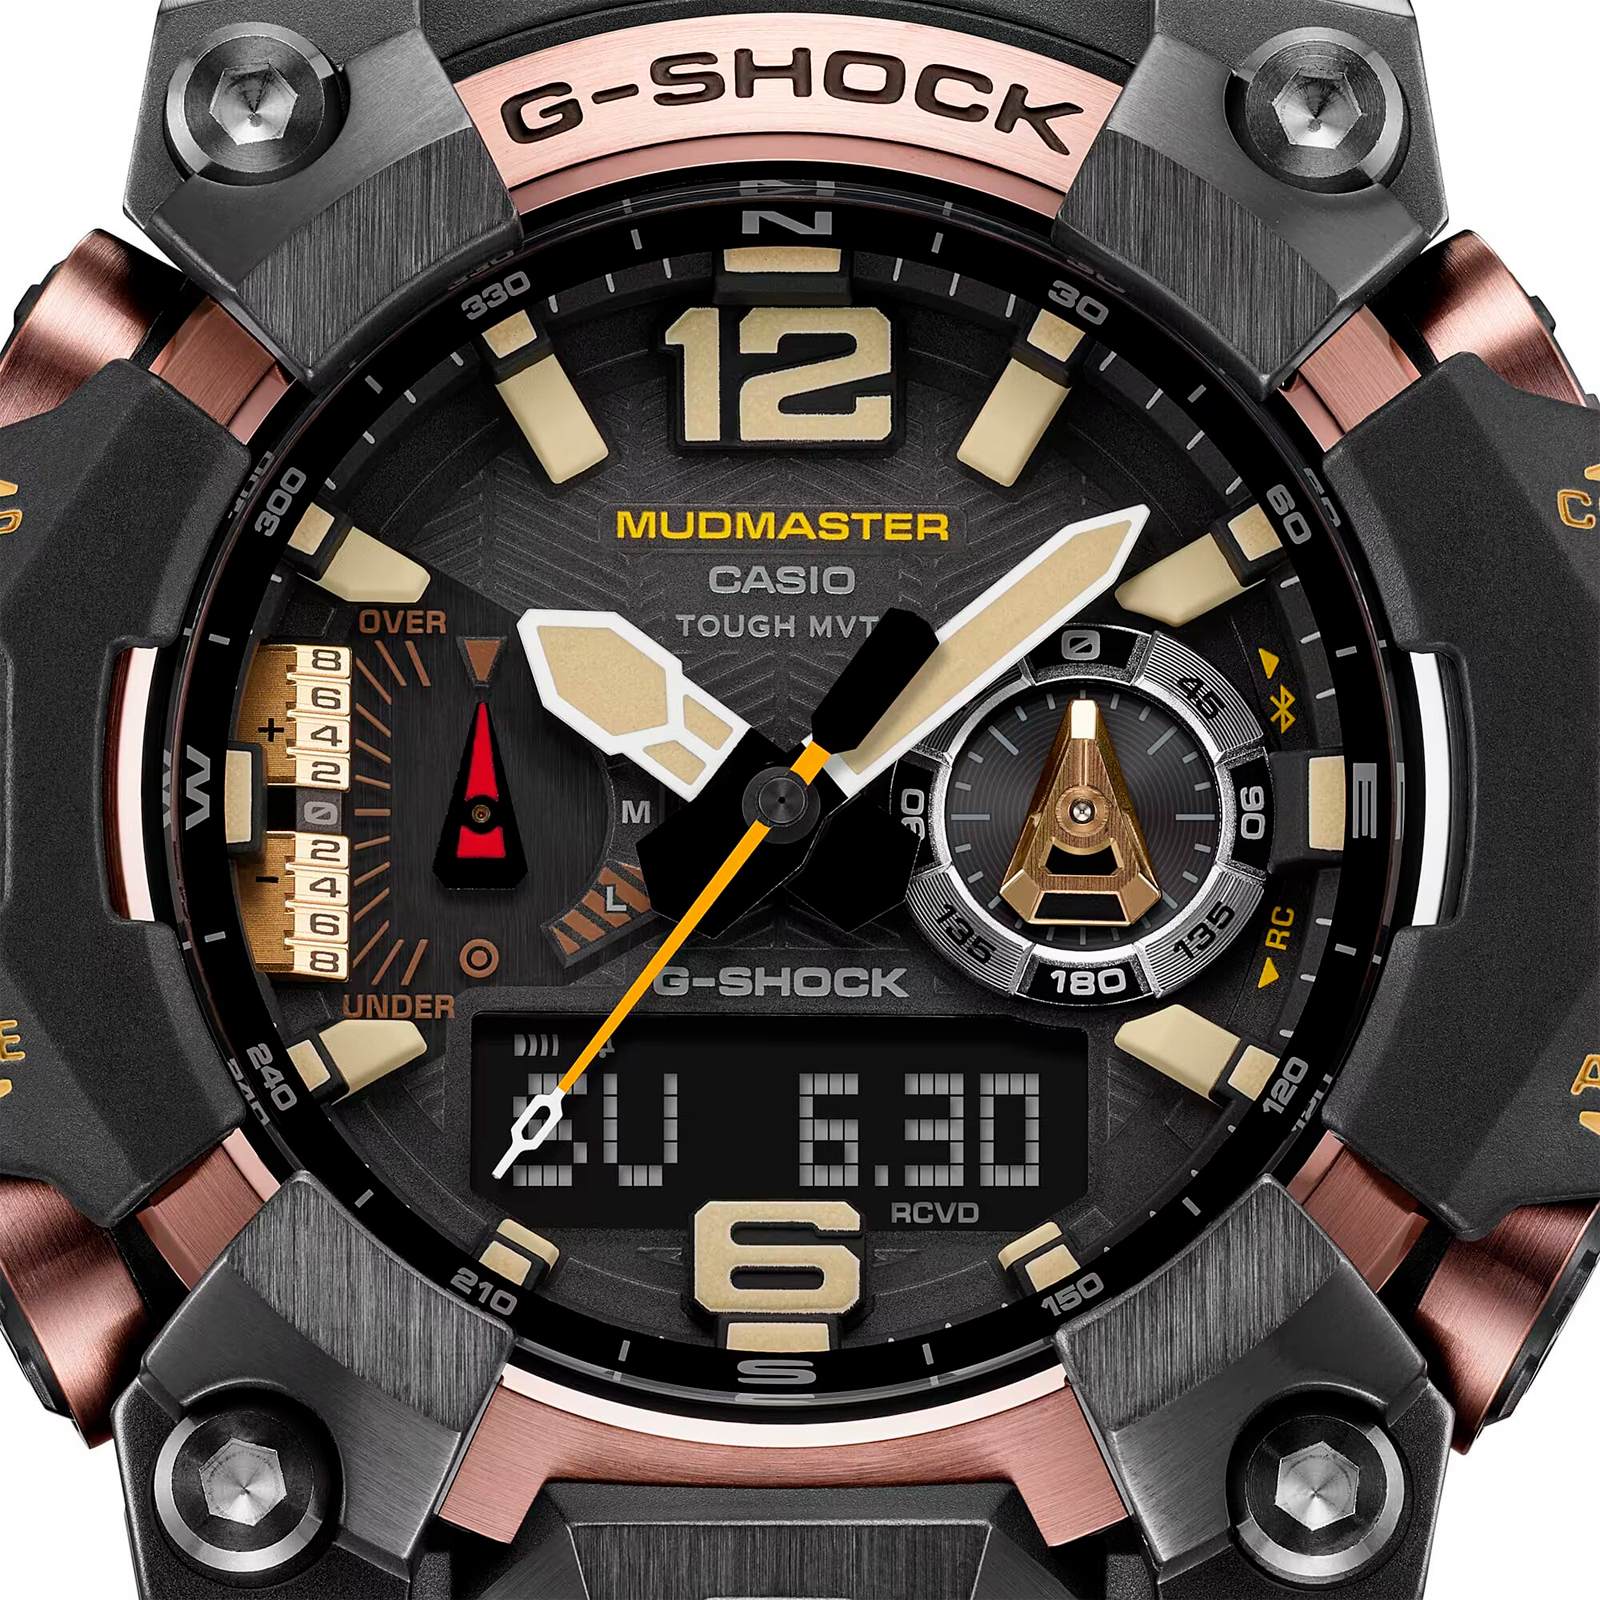 Oiritaly Reloj - Quarzo - Hombre - G-Shock - MASTER OF G - Relojes